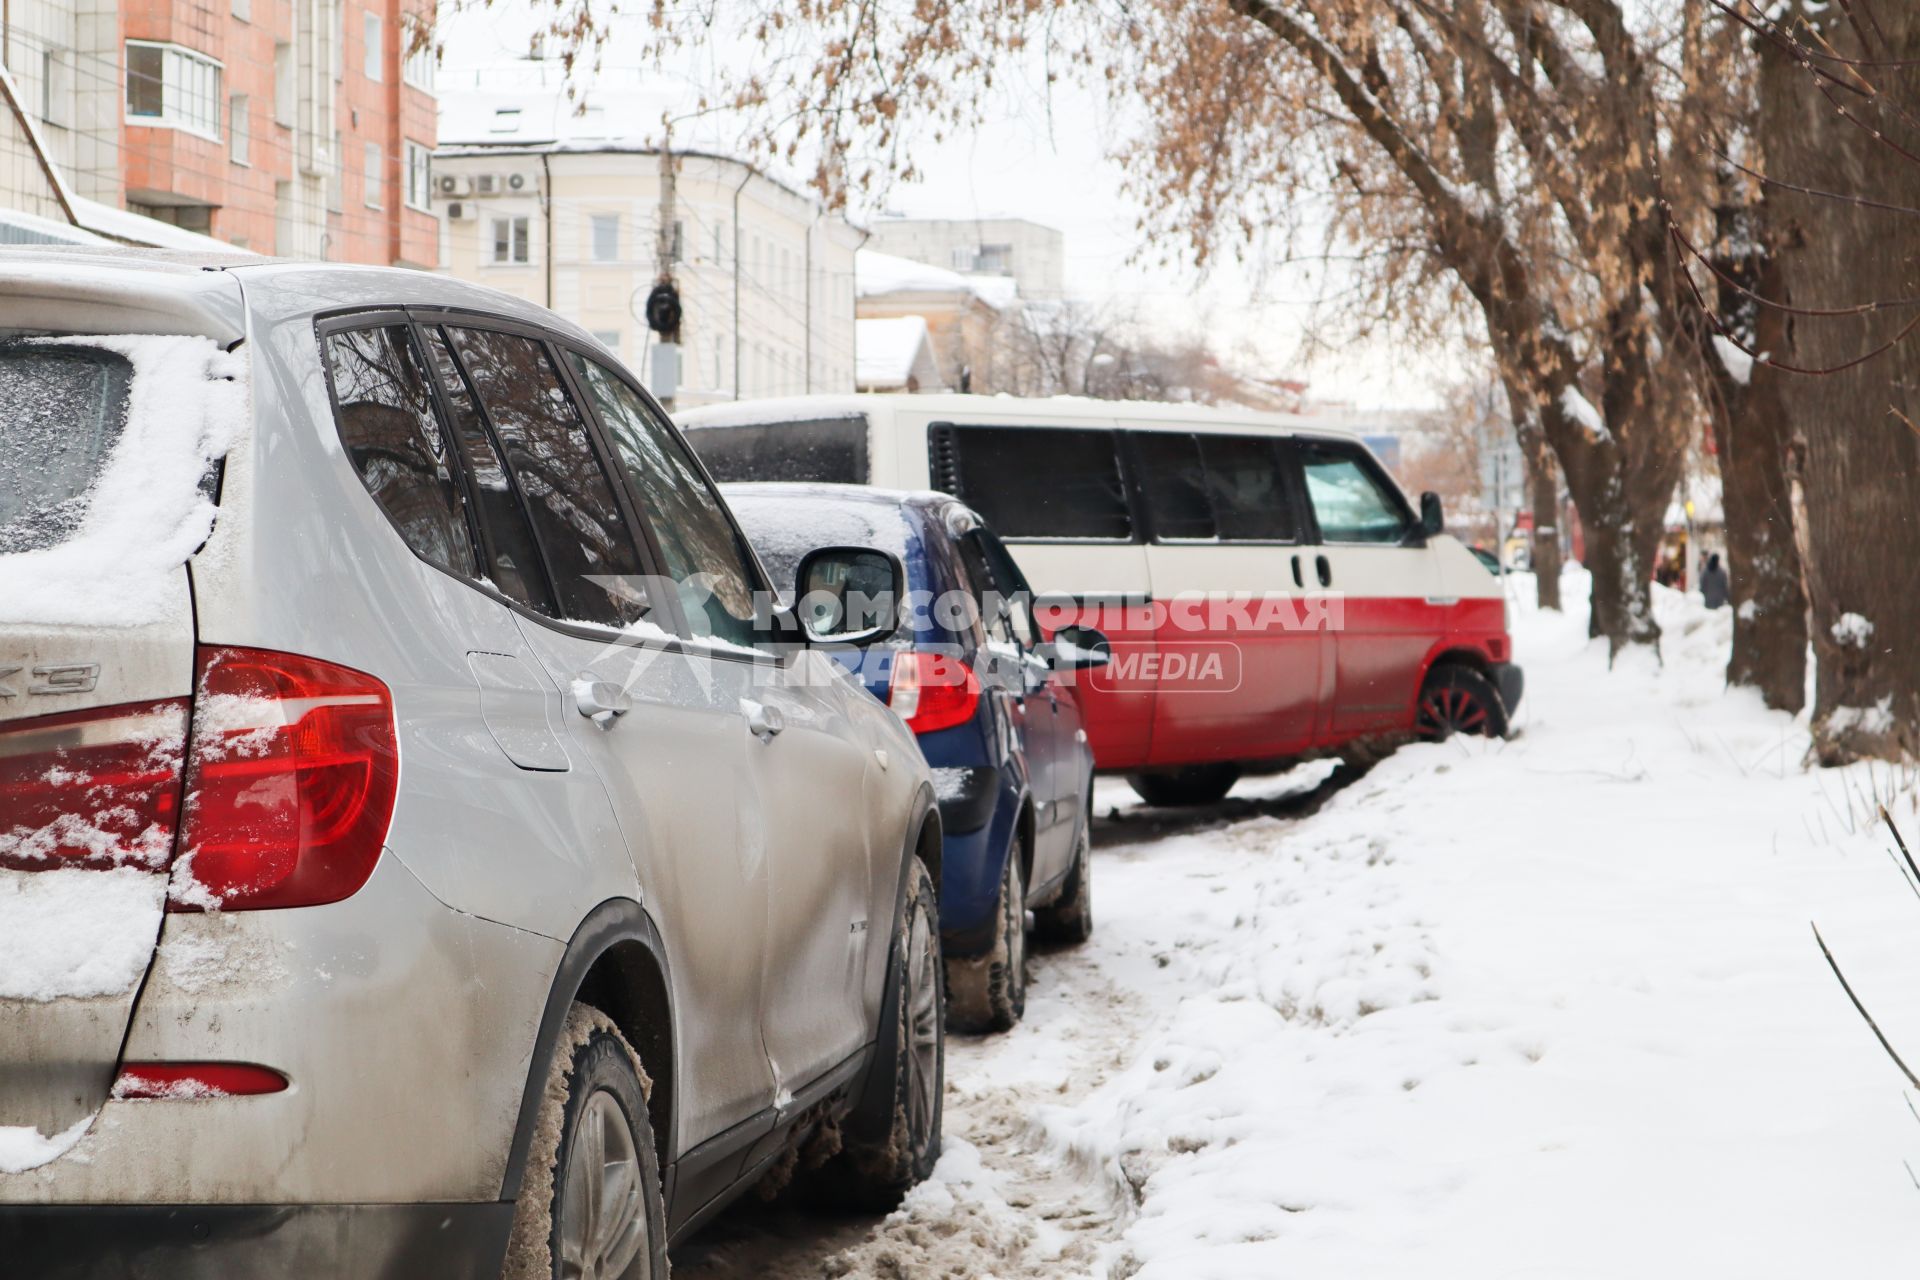 Пермь. Припаркованные автомобили на одной из улиц города.